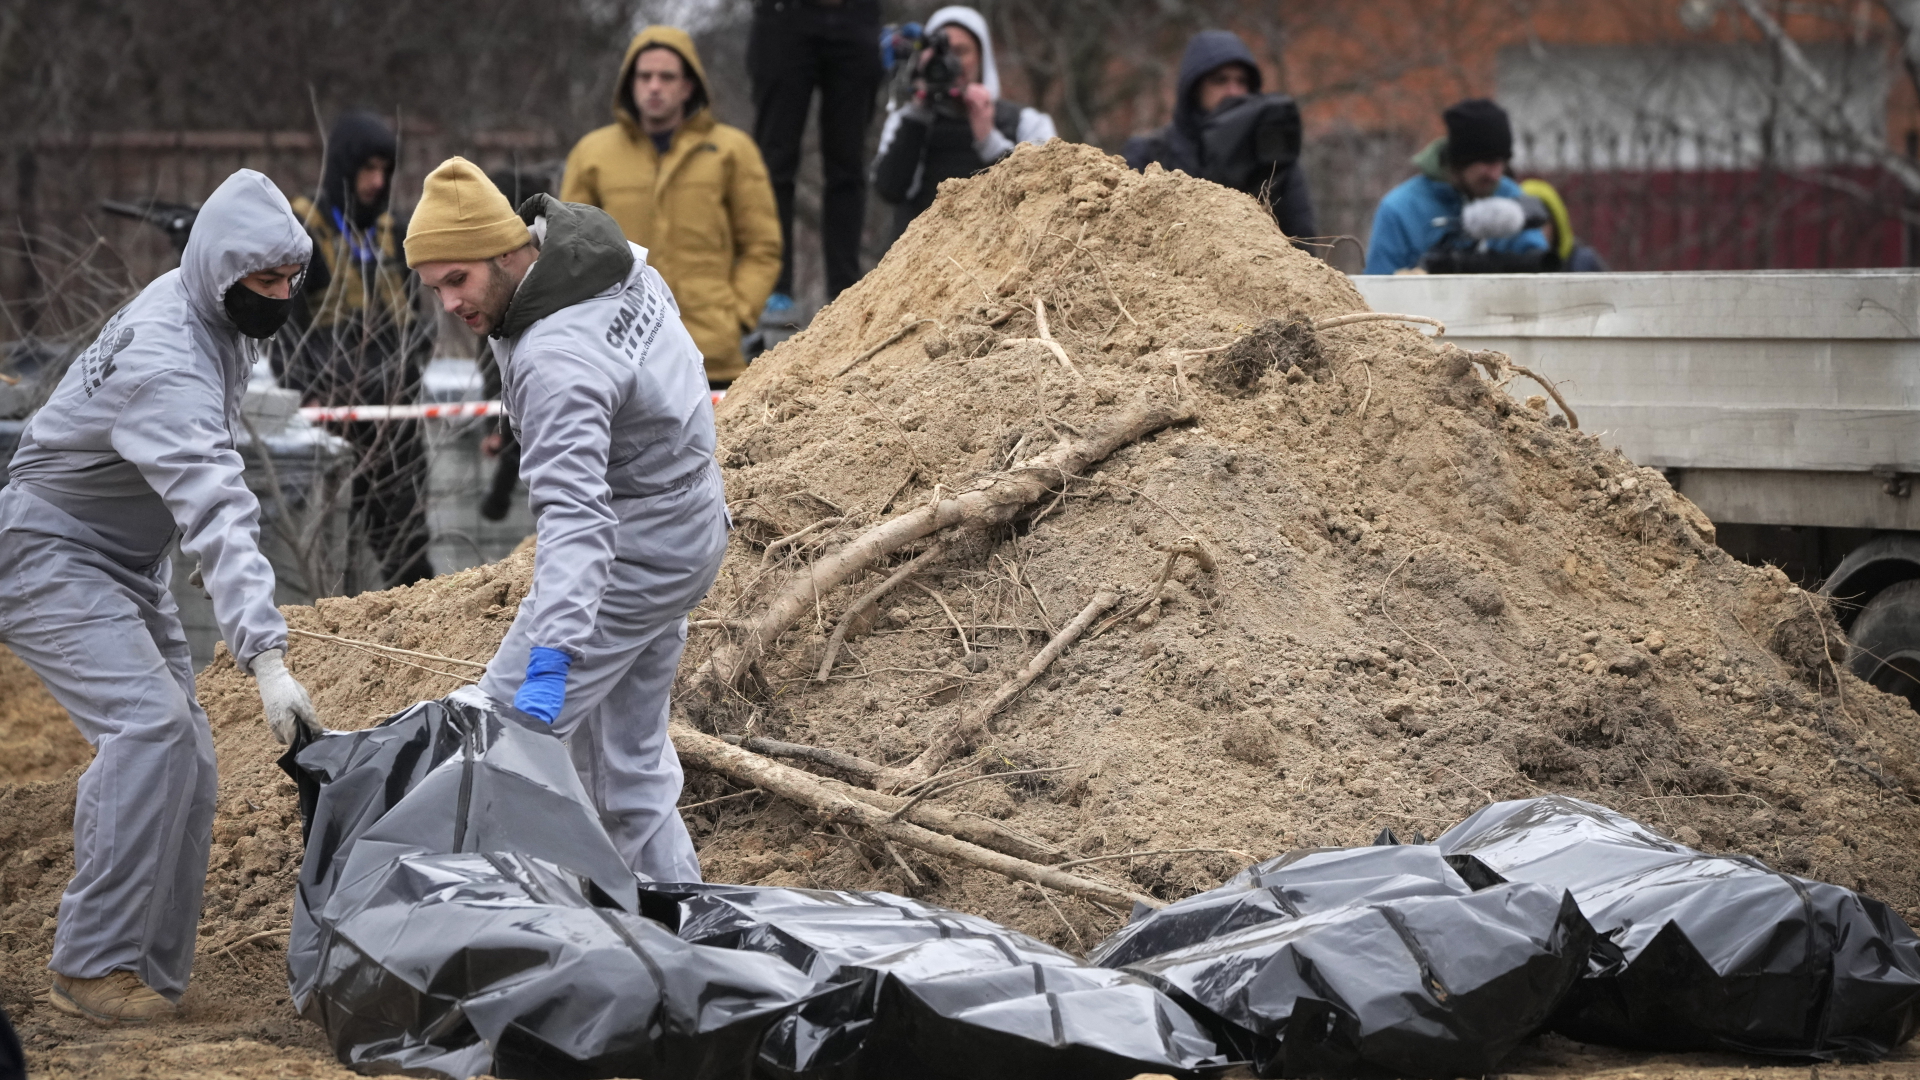 Männer in Schutzkleidung exhumieren Leichen getöteter Zivilisten | dpa